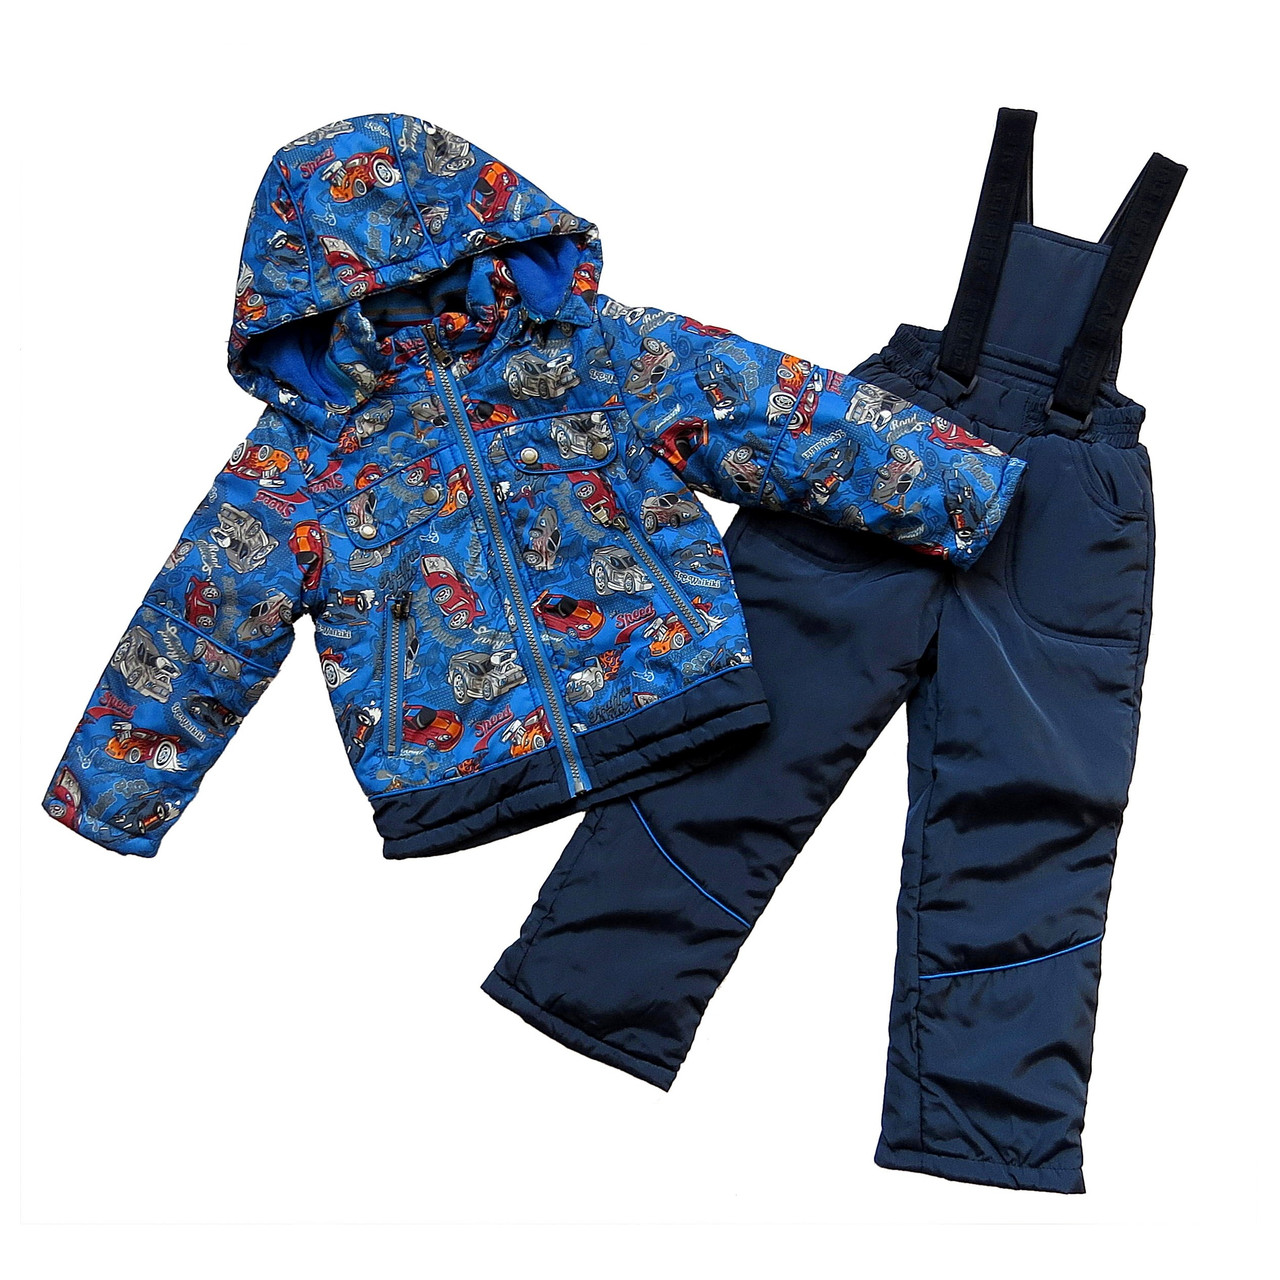 

Комплект "Машины" (куртка+полукомбинезон) Rongmao fashion для мальчика 80 см Синий 5746 Большемерный